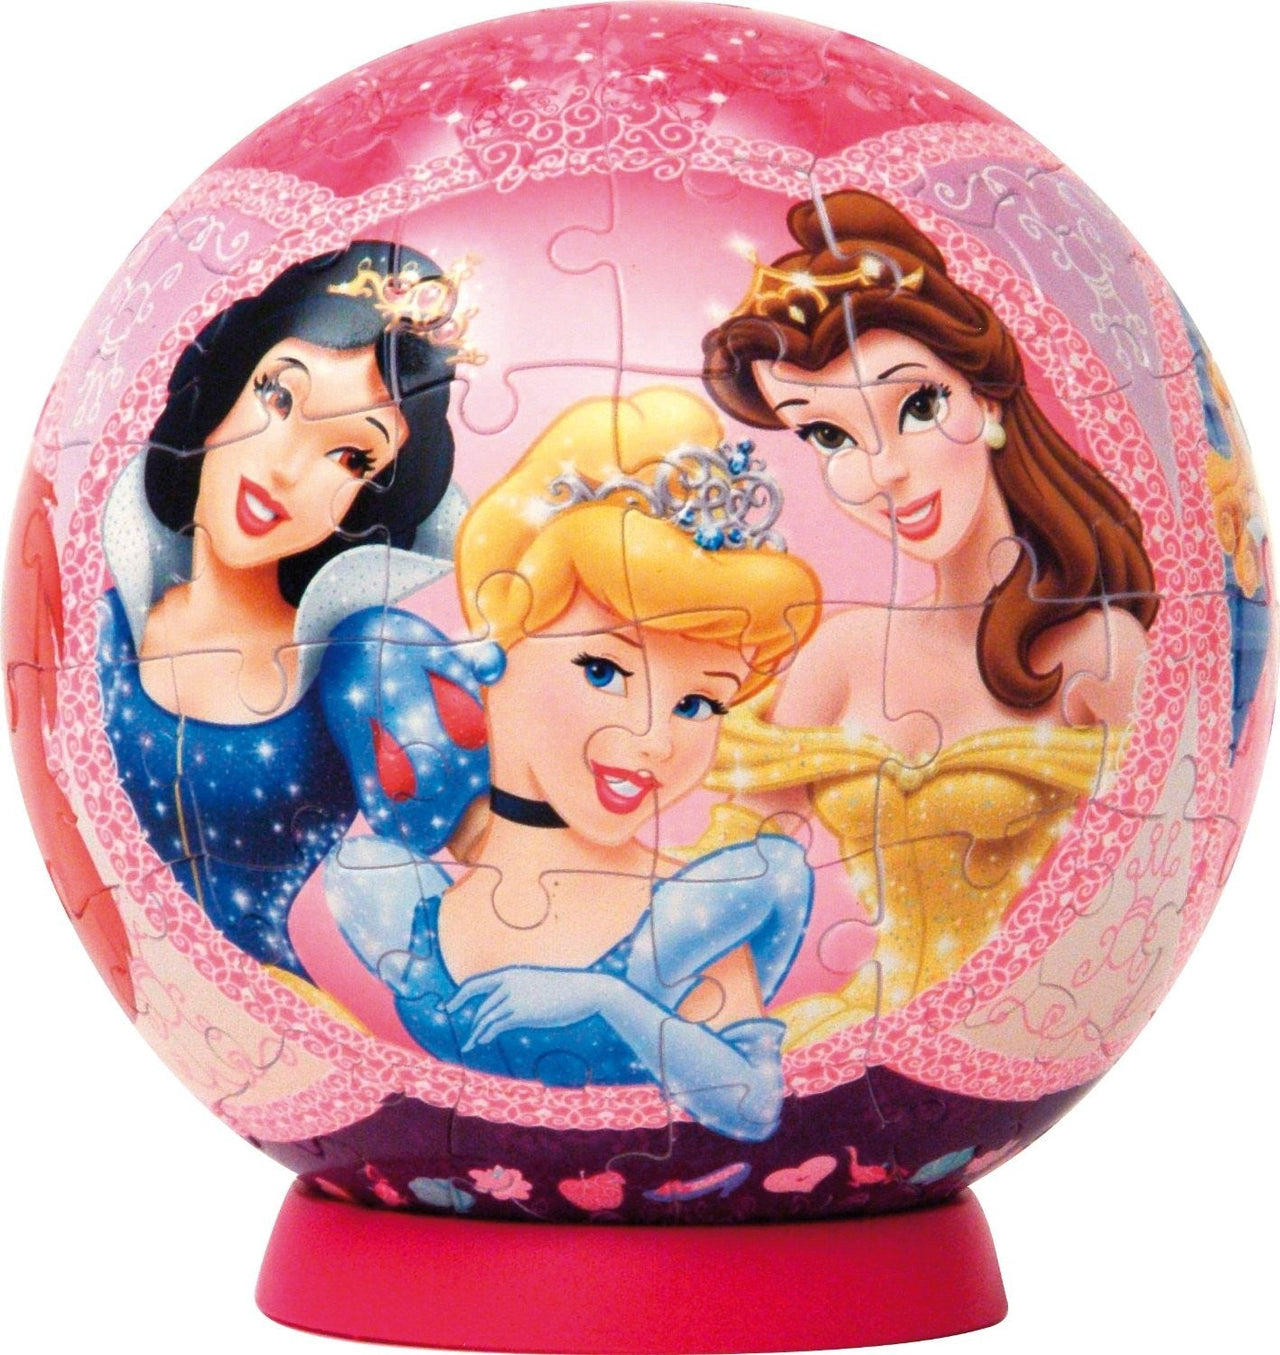 Puzzle Bola Princesas Disney - Banbury Arte